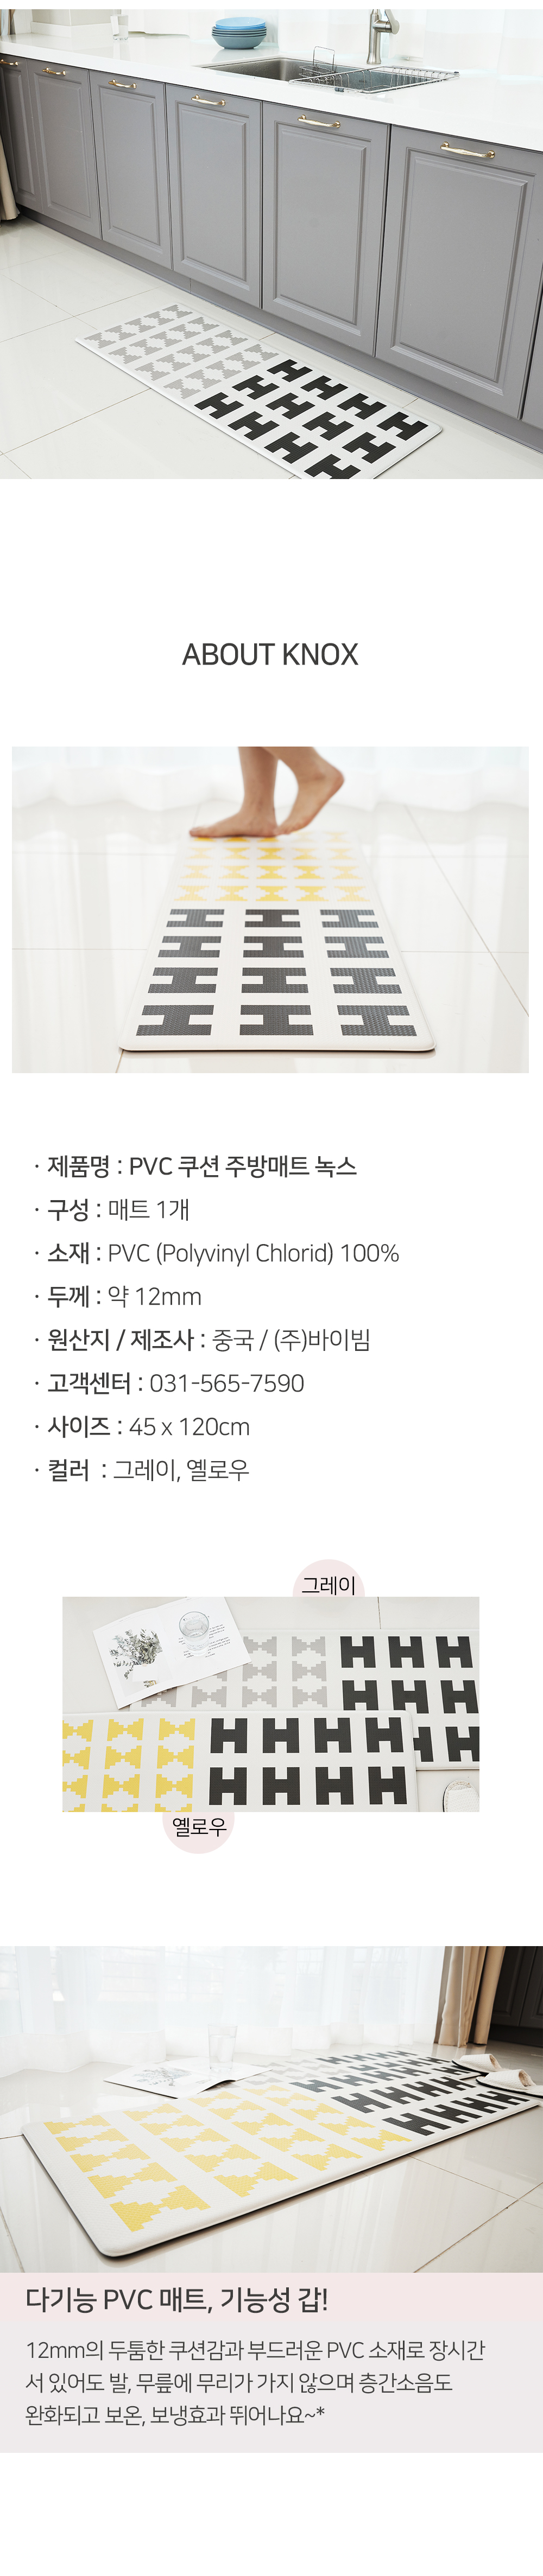 about buybeam PVC kitchen mat knox